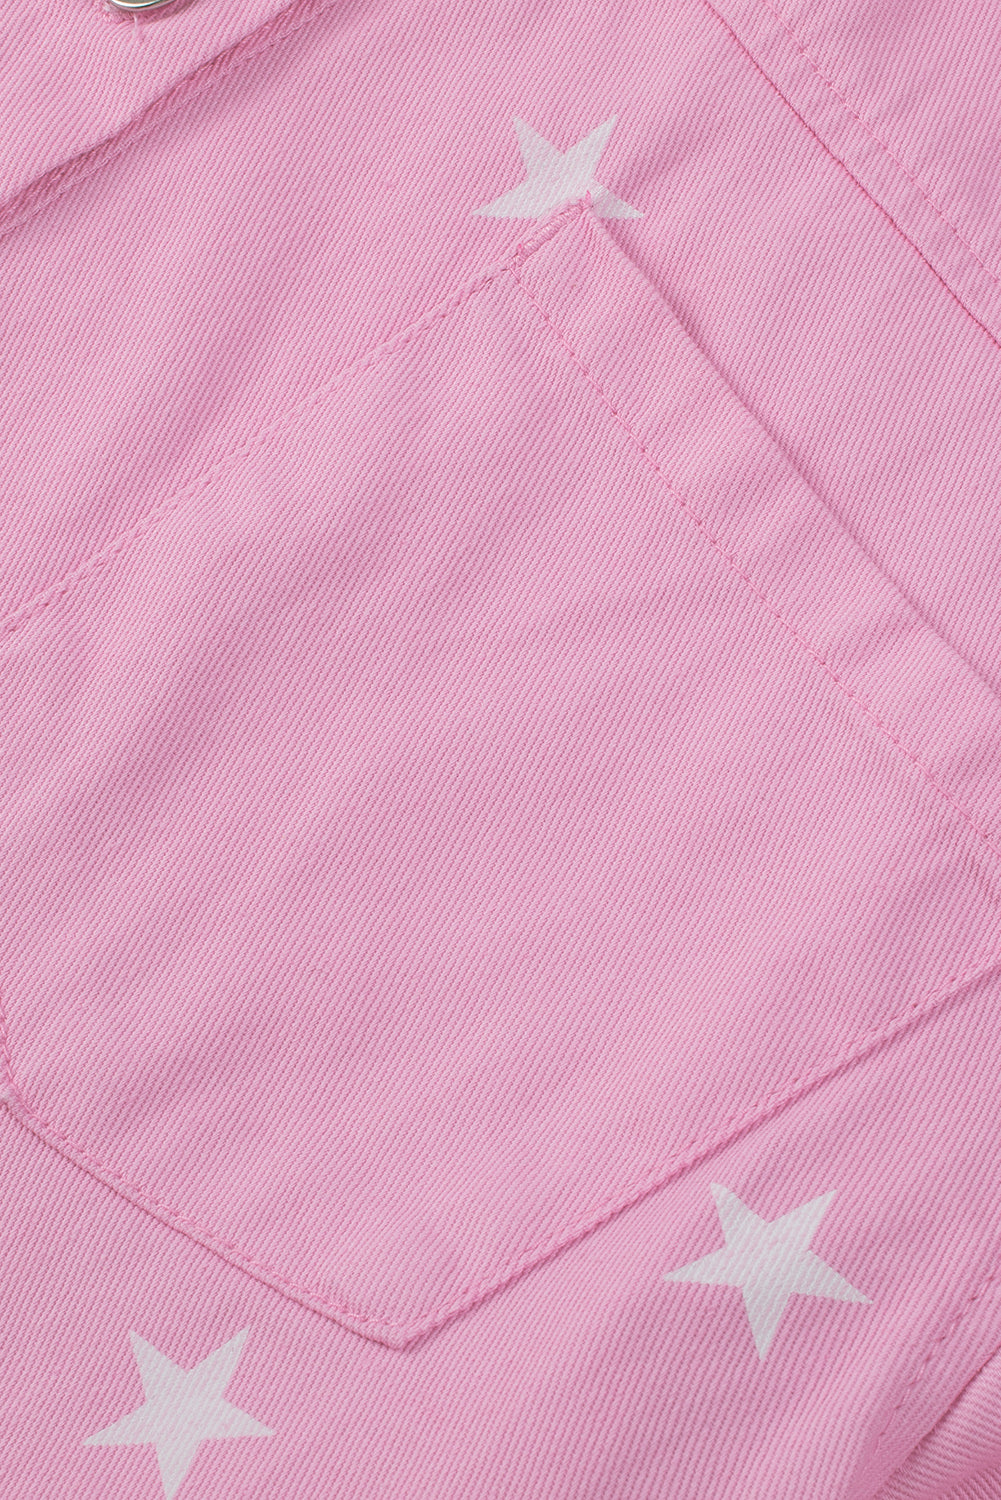 Rosa Jeansjacke mit Sternenmuster und Knöpfen